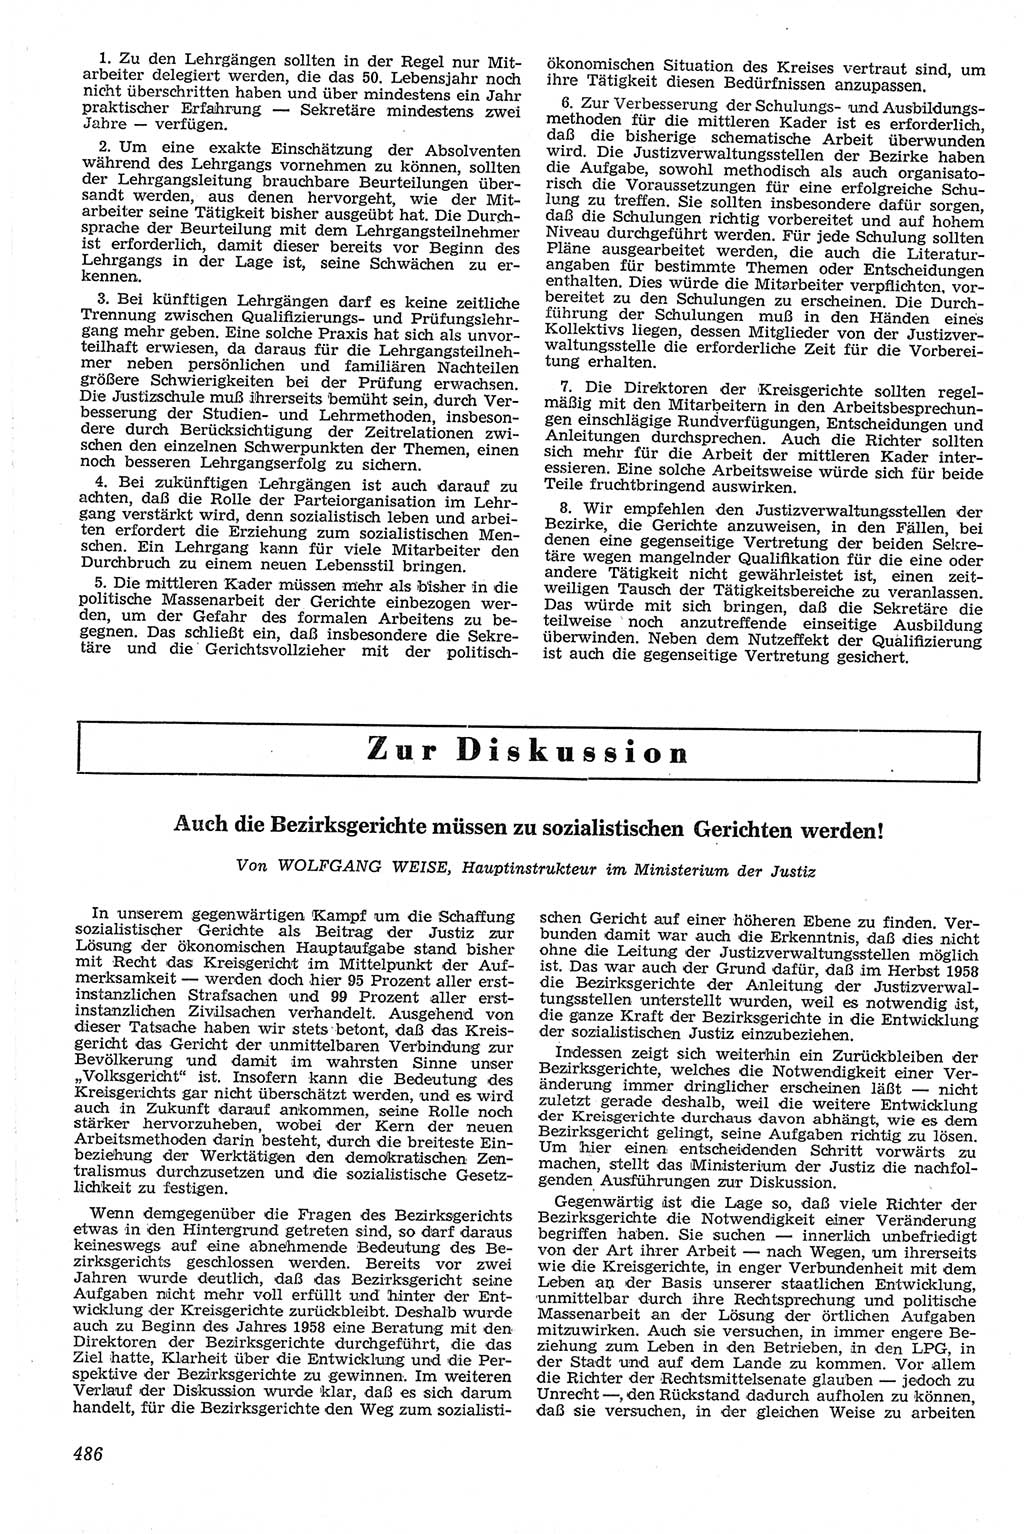 Neue Justiz (NJ), Zeitschrift für Recht und Rechtswissenschaft [Deutsche Demokratische Republik (DDR)], 13. Jahrgang 1959, Seite 486 (NJ DDR 1959, S. 486)